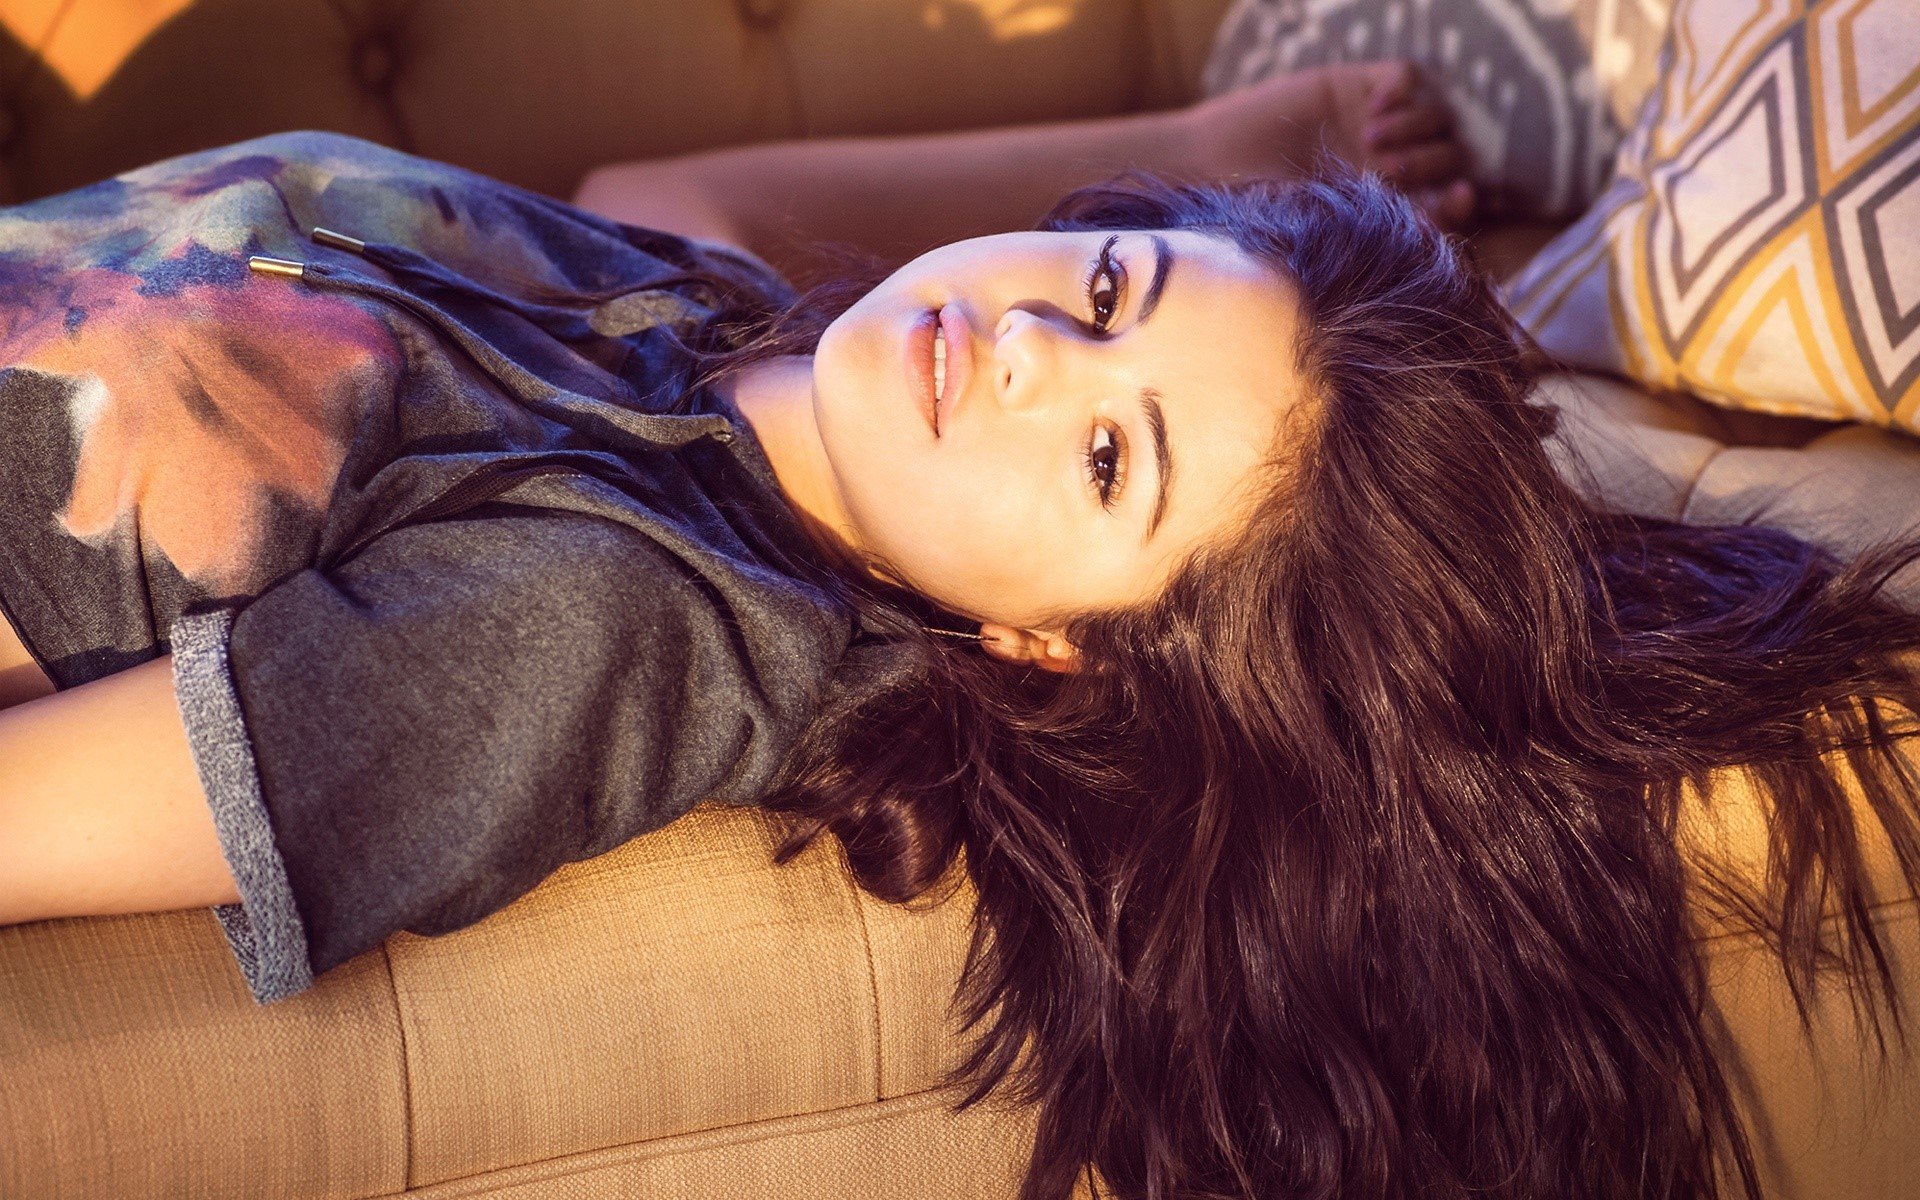 Fondos de pantalla Selena Gomez acostada en un sillón